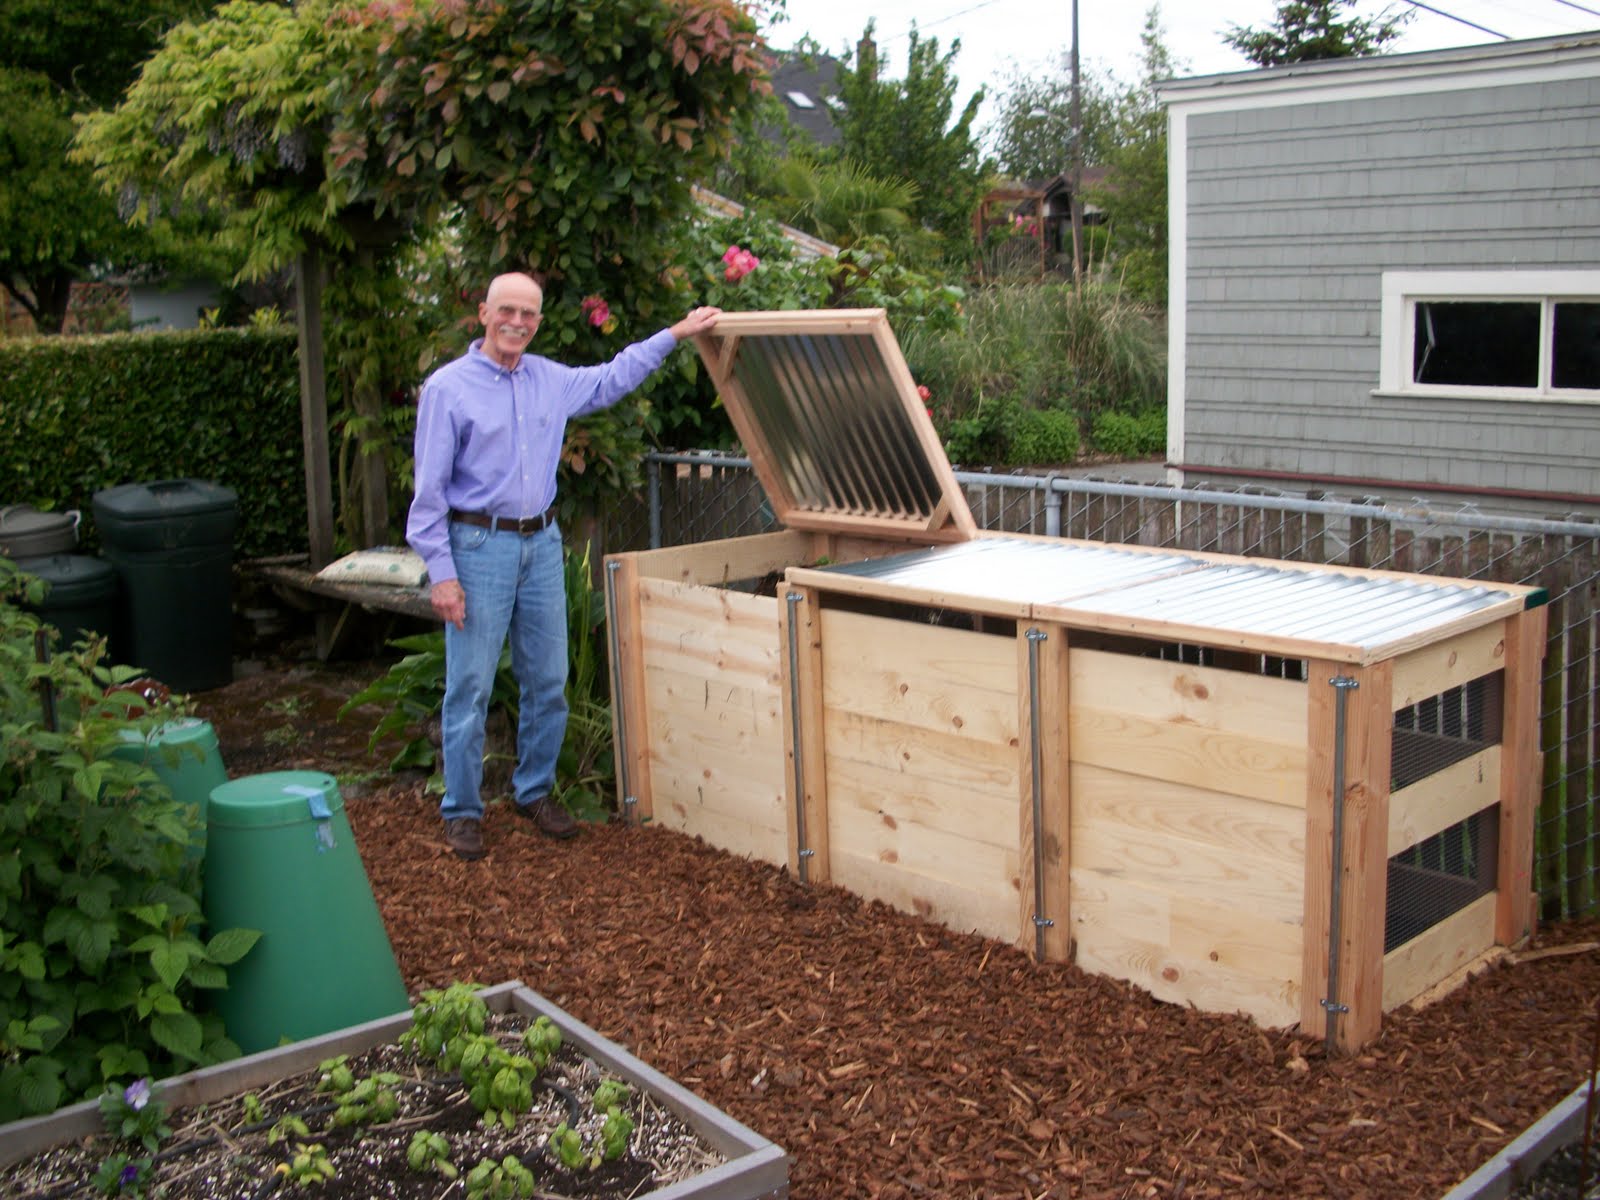 The Virtual World: New compost bins, virtual garden tour